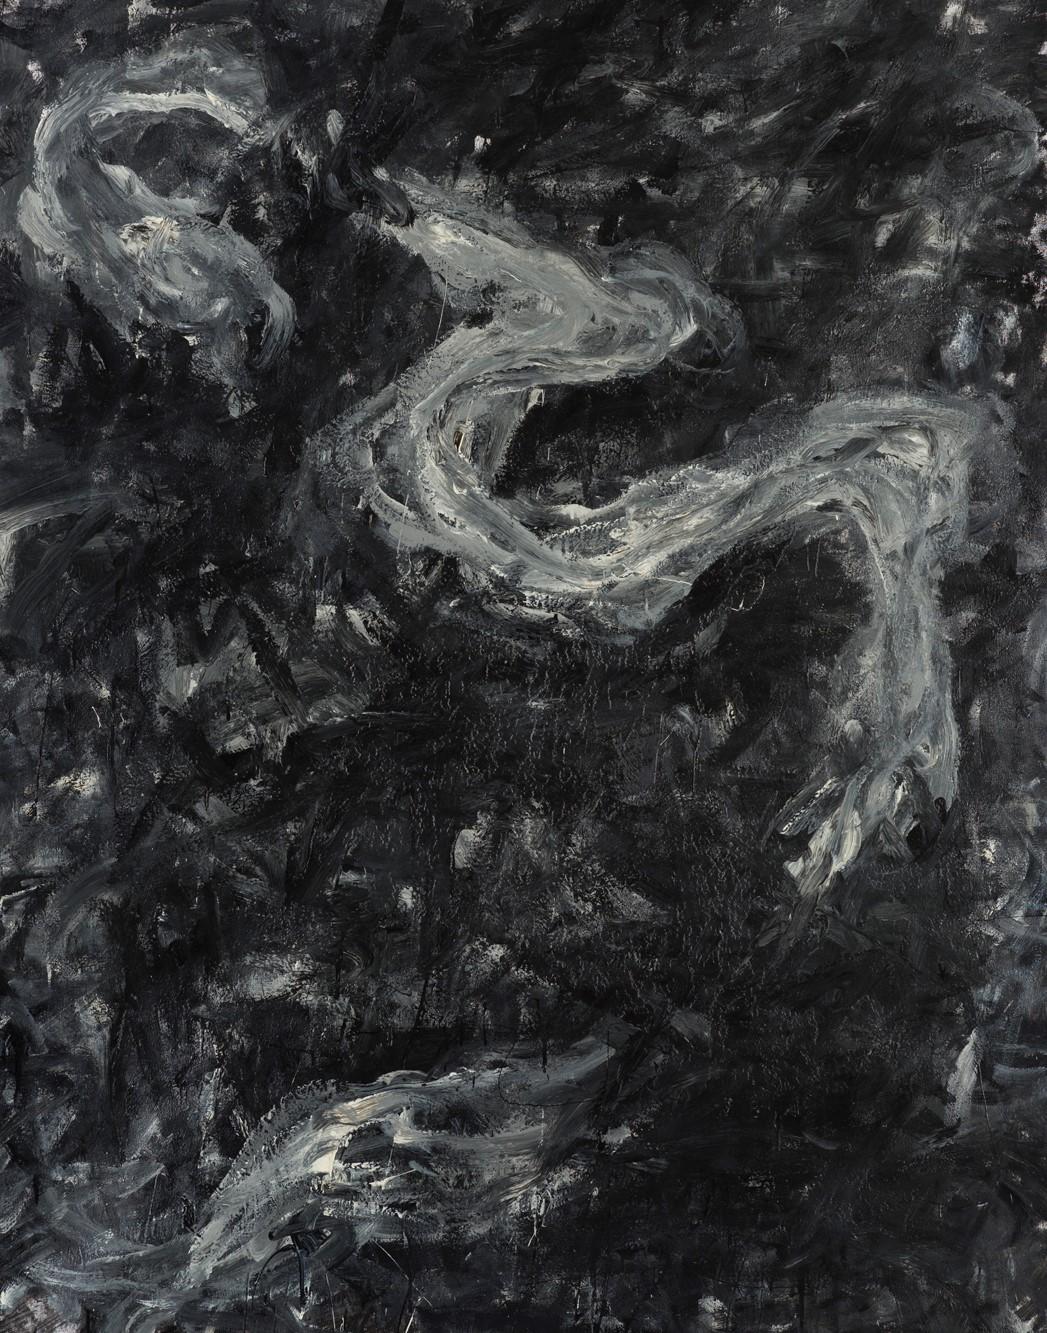 Sans titre 05 [Remains of the Remains 05] - Contemporain, abstrait, noir, gris - Painting de Zsolt Berszán